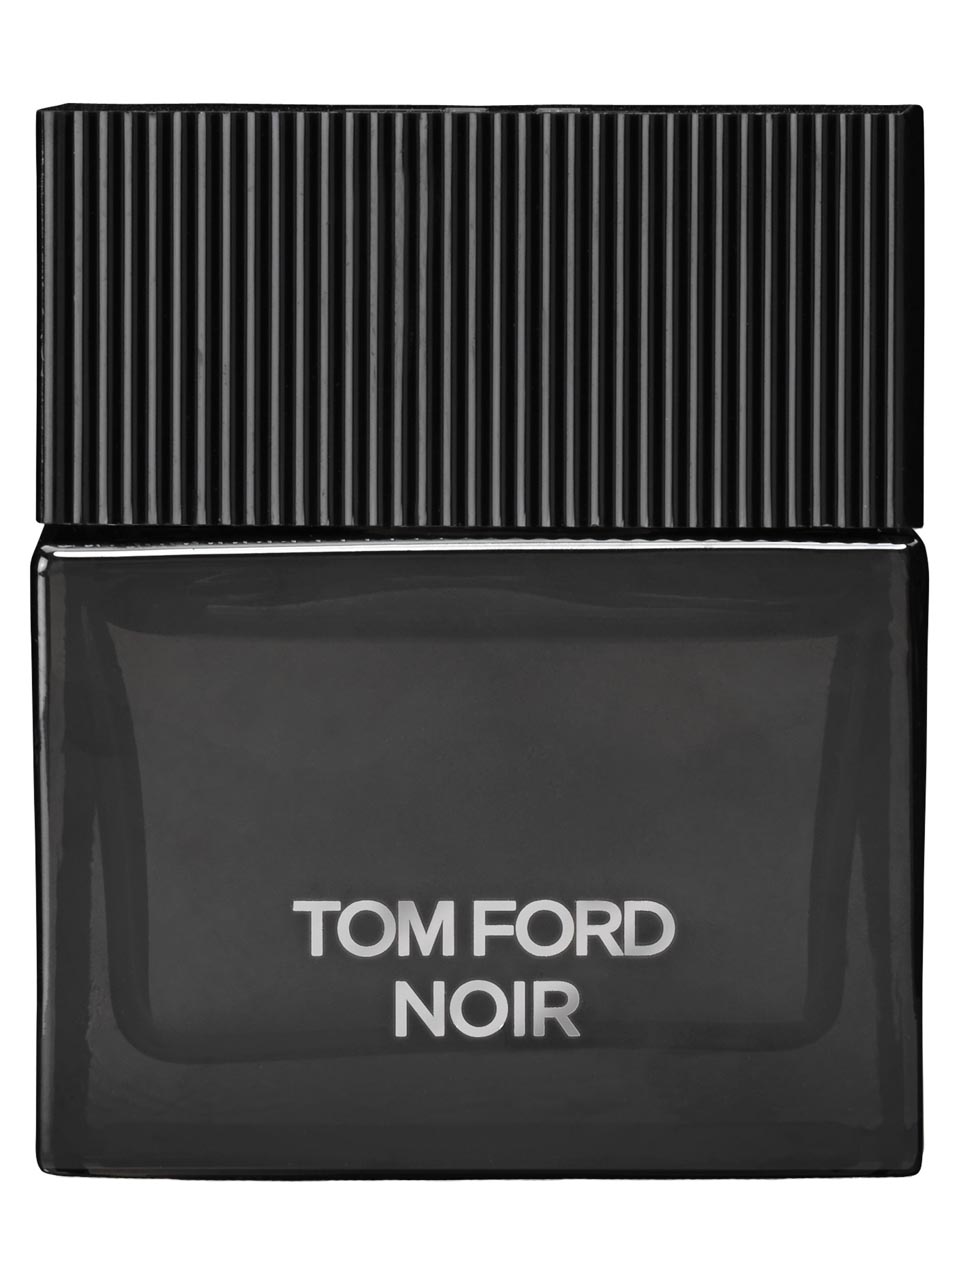 Tom Ford Noir Eau de Parfum 50 ml null - onesize - 1